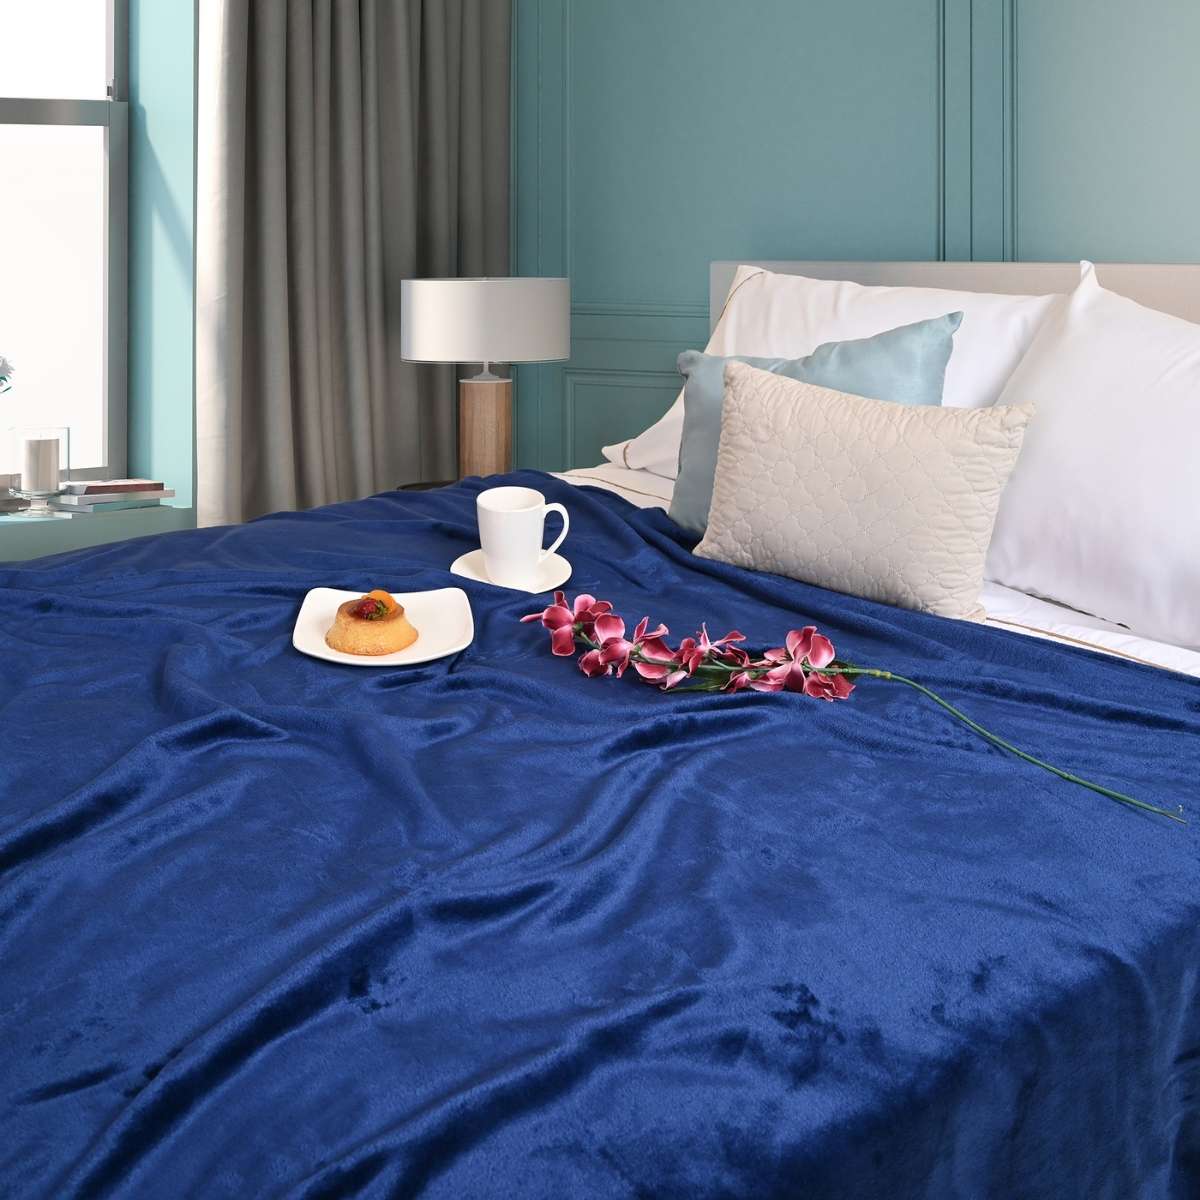 Cobija de flanel color marino tamaño queen size  tendida sobre una cama 